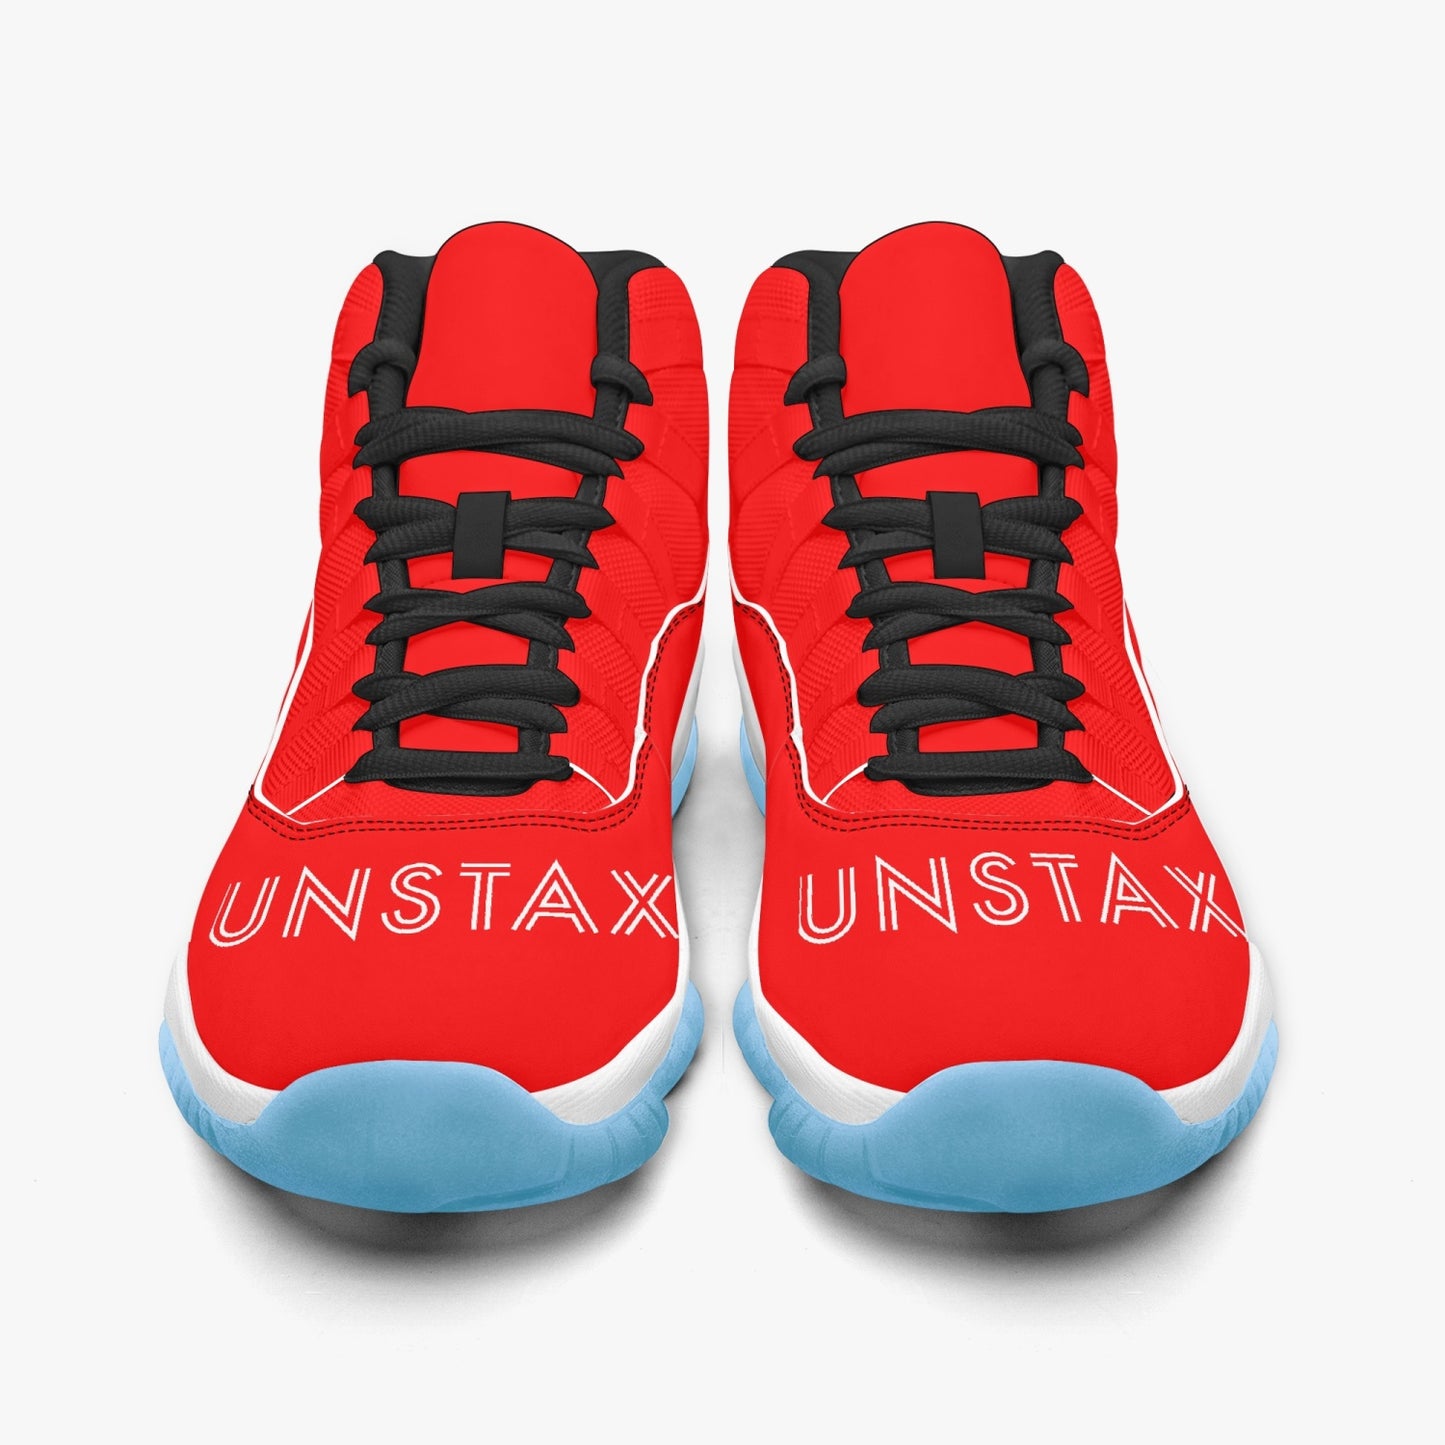 Unstax Raks Basketball Sneakers -Blue Sole